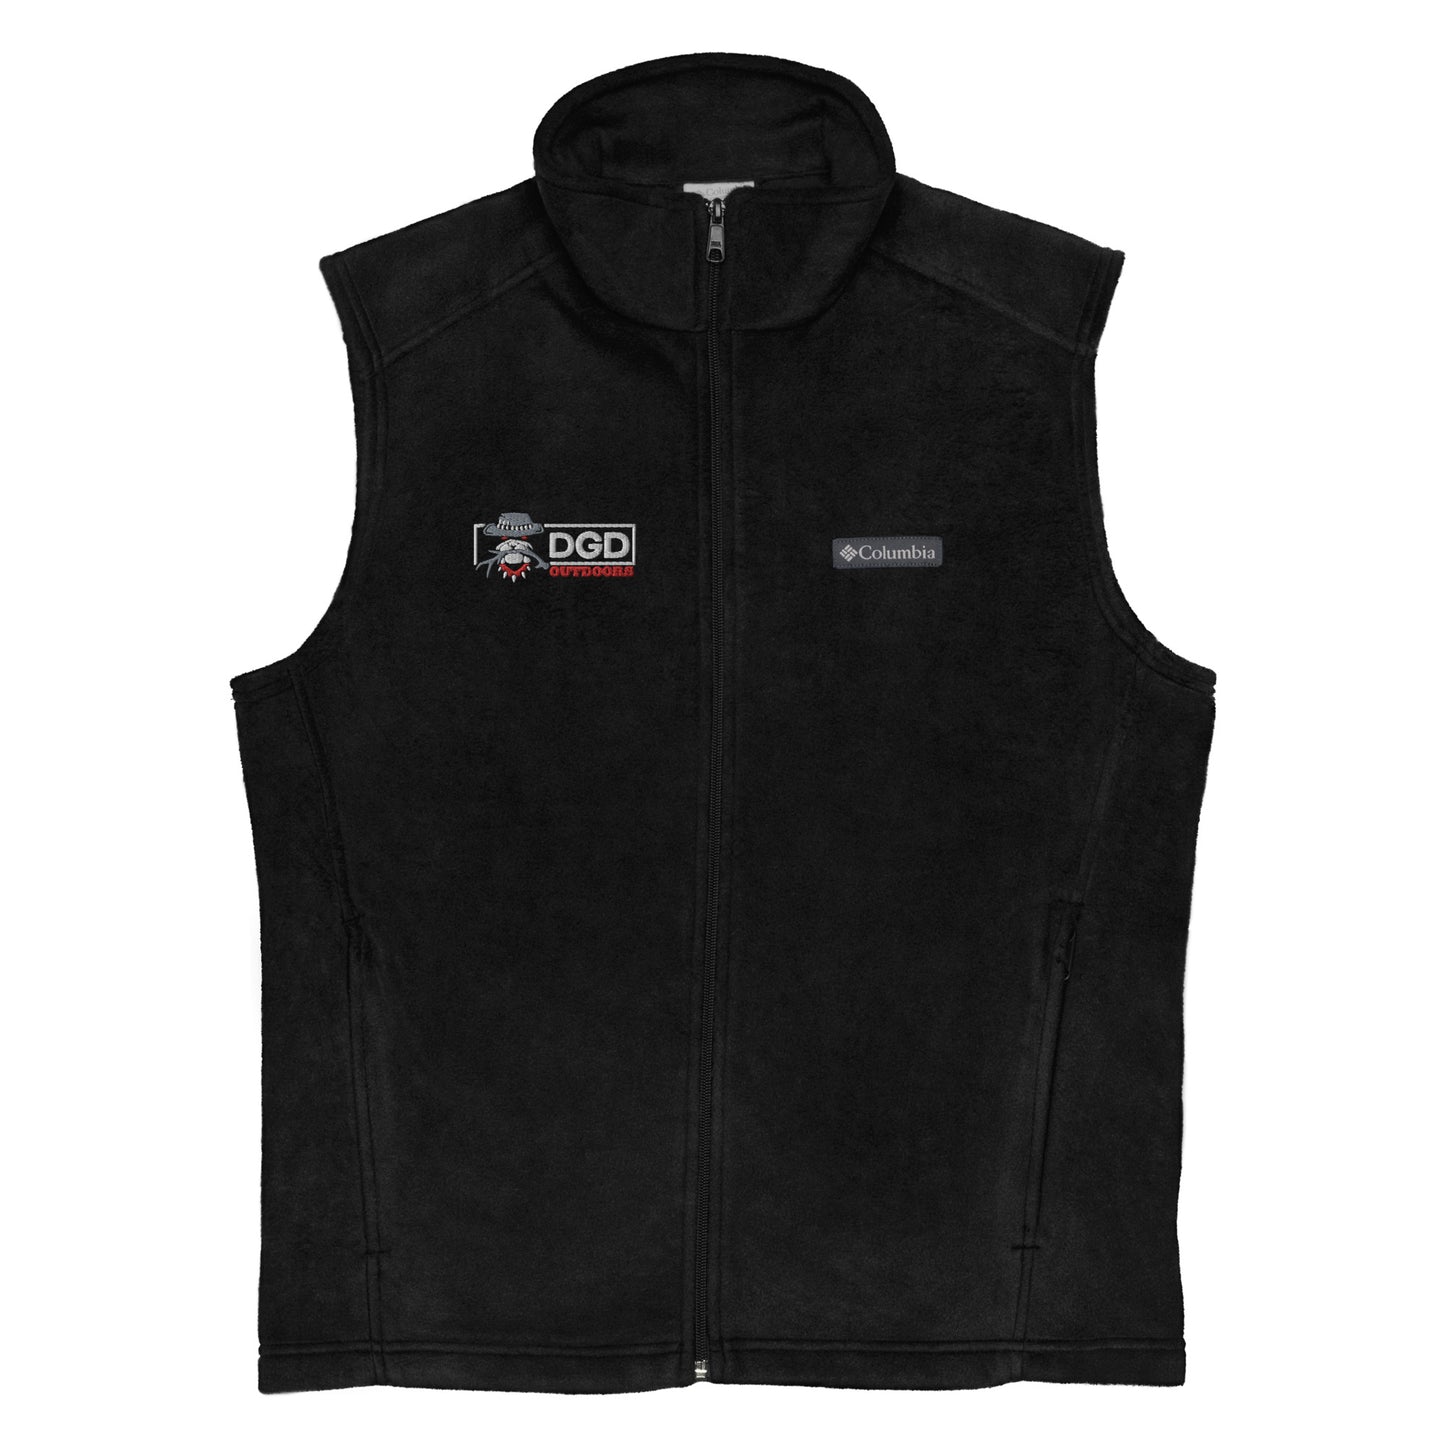 Men’s  DGD Columbia fleece vest